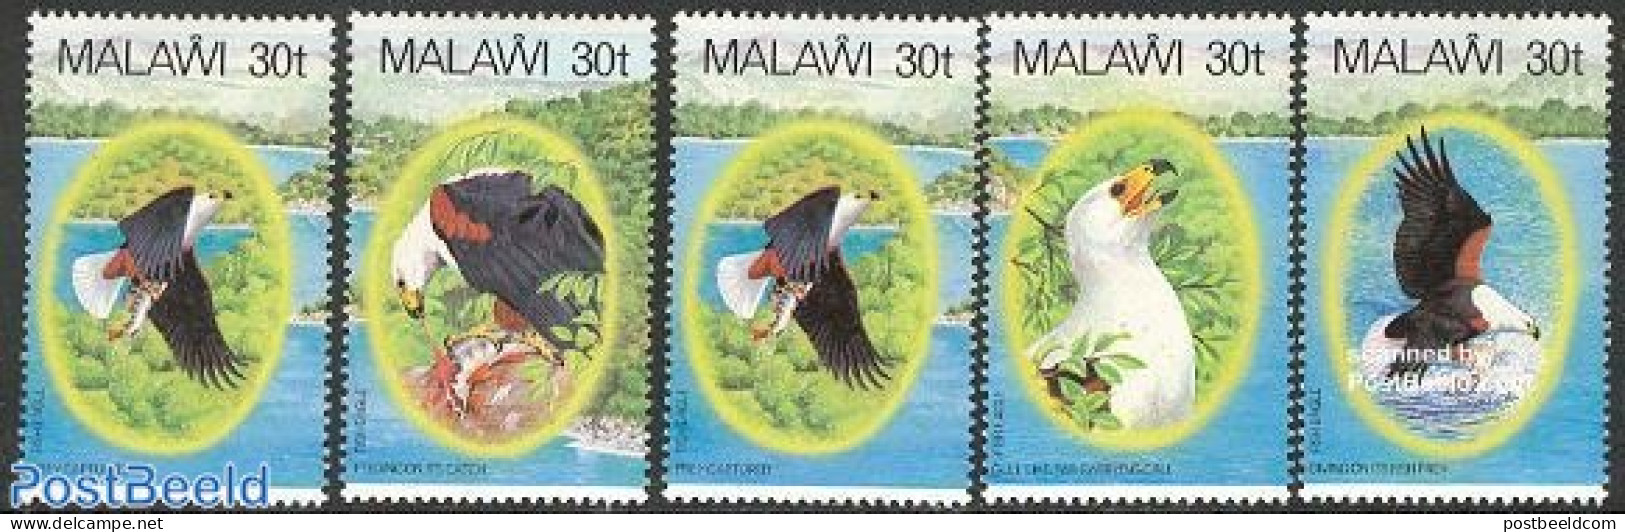 Malawi 1983 Birds 5v, Mint NH, Nature - Birds - Malawi (1964-...)